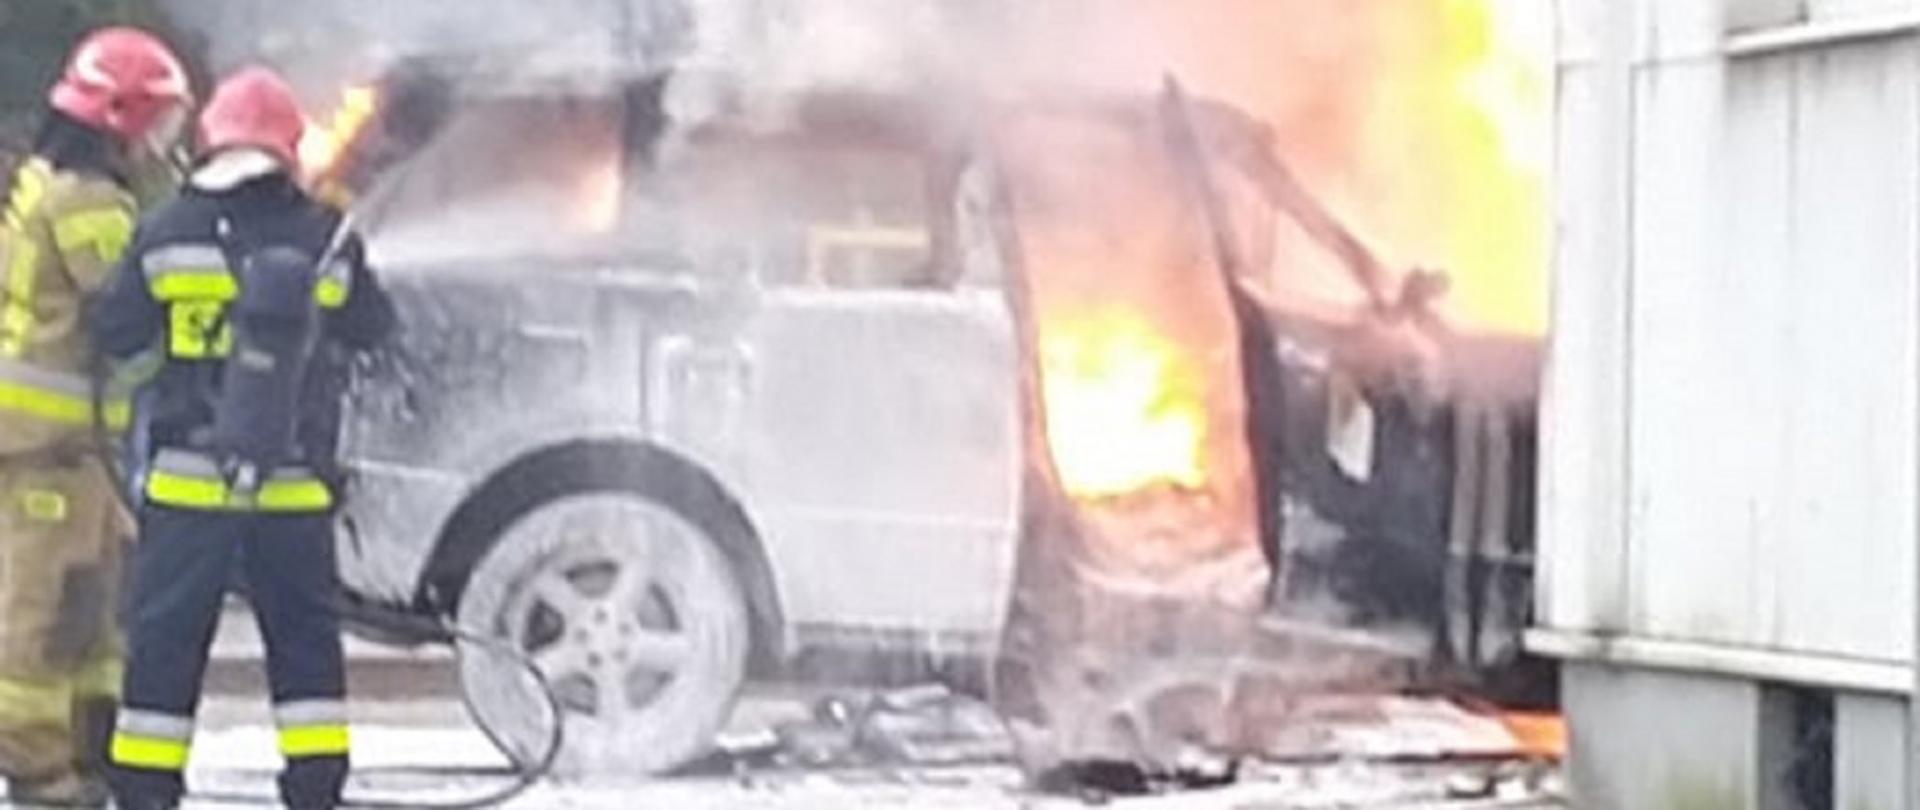 Na zdjęciu widoczny pożar samochodu osobowego oraz dwóch strażaków - jeden w jasnym, drugim w ciemnym ubraniu specjalnym. Jeden ma założony aparat powietrzny.